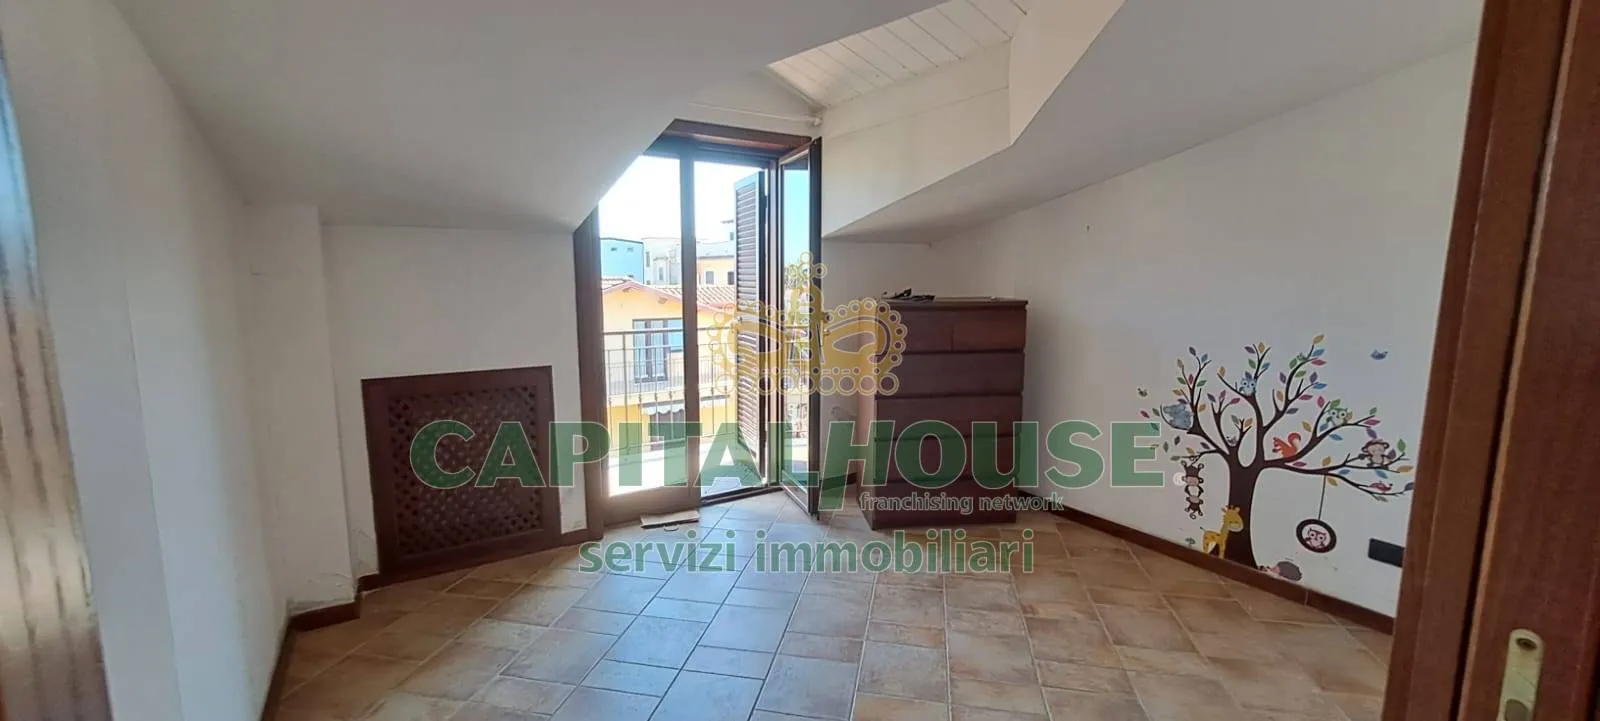 Immagine per Appartamento in vendita a Villaricca